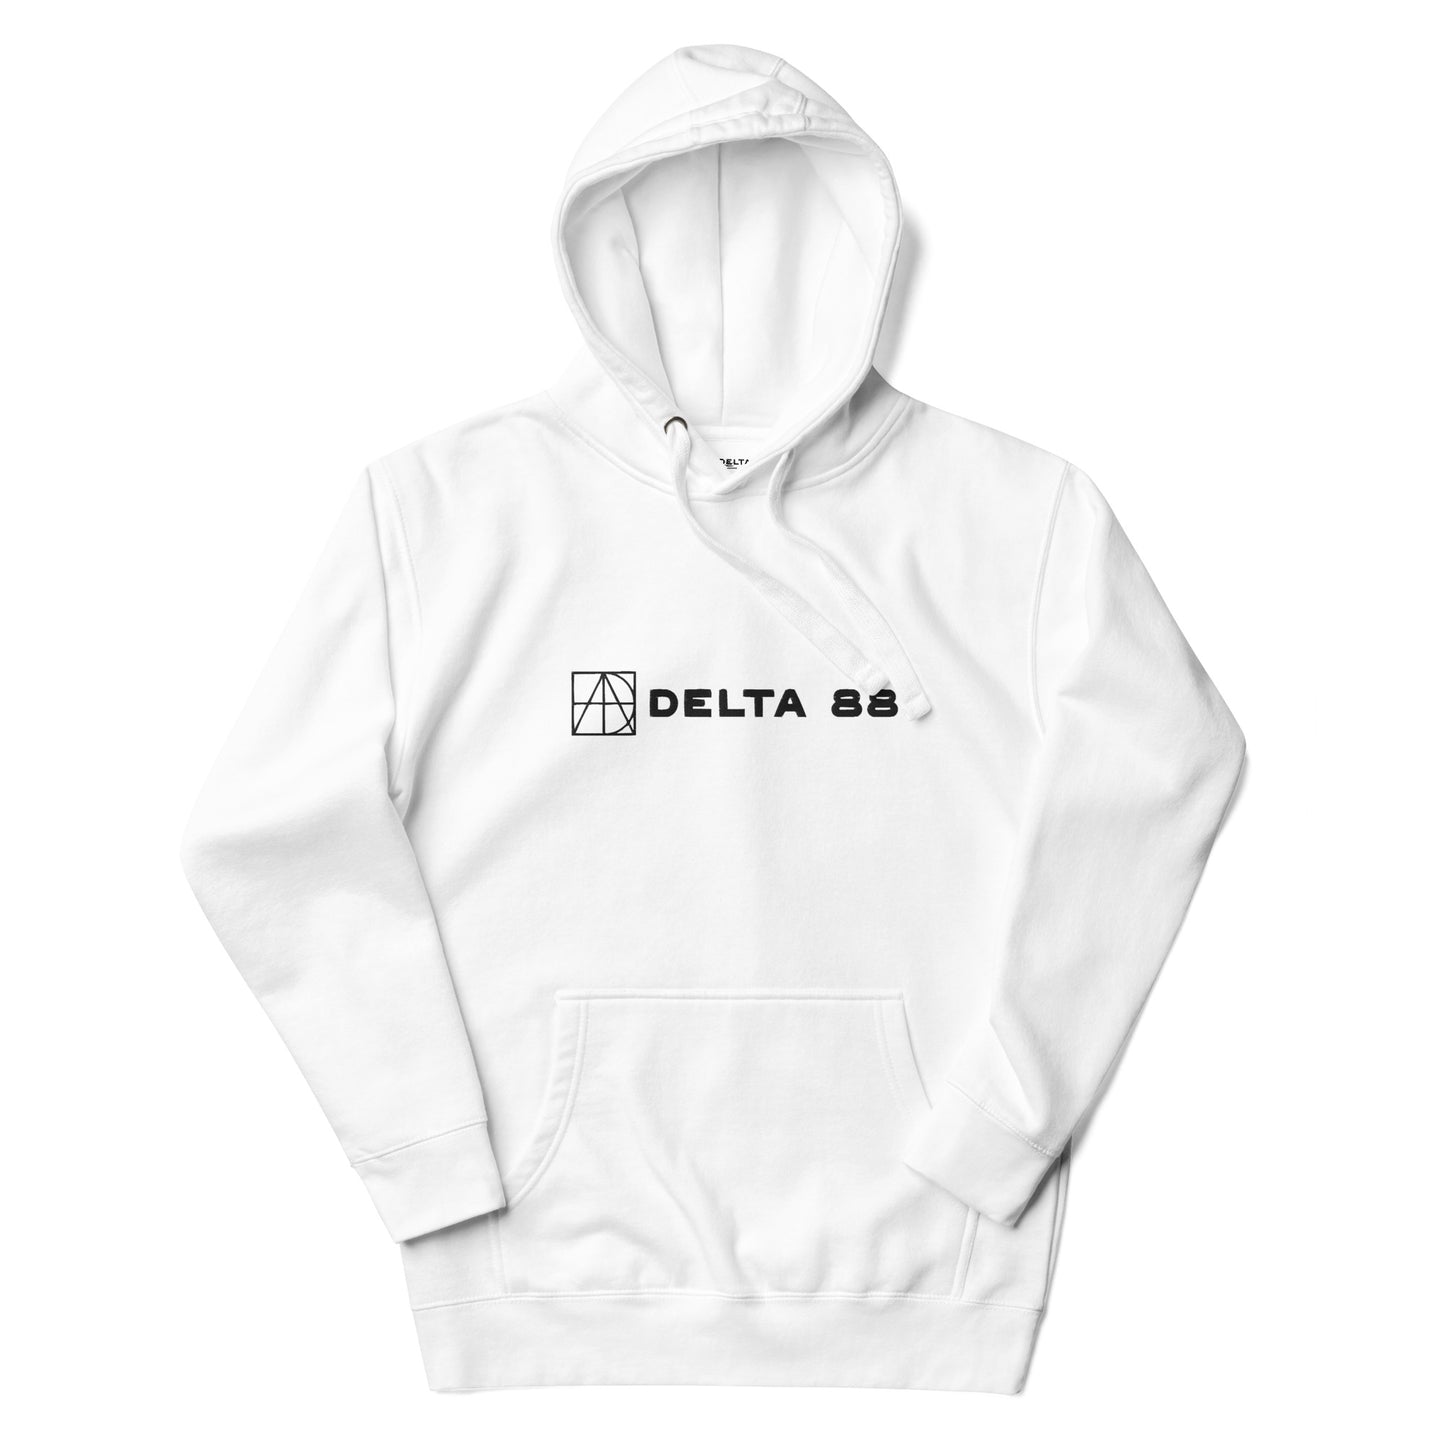 Delta 88 White Unisex Hoodie